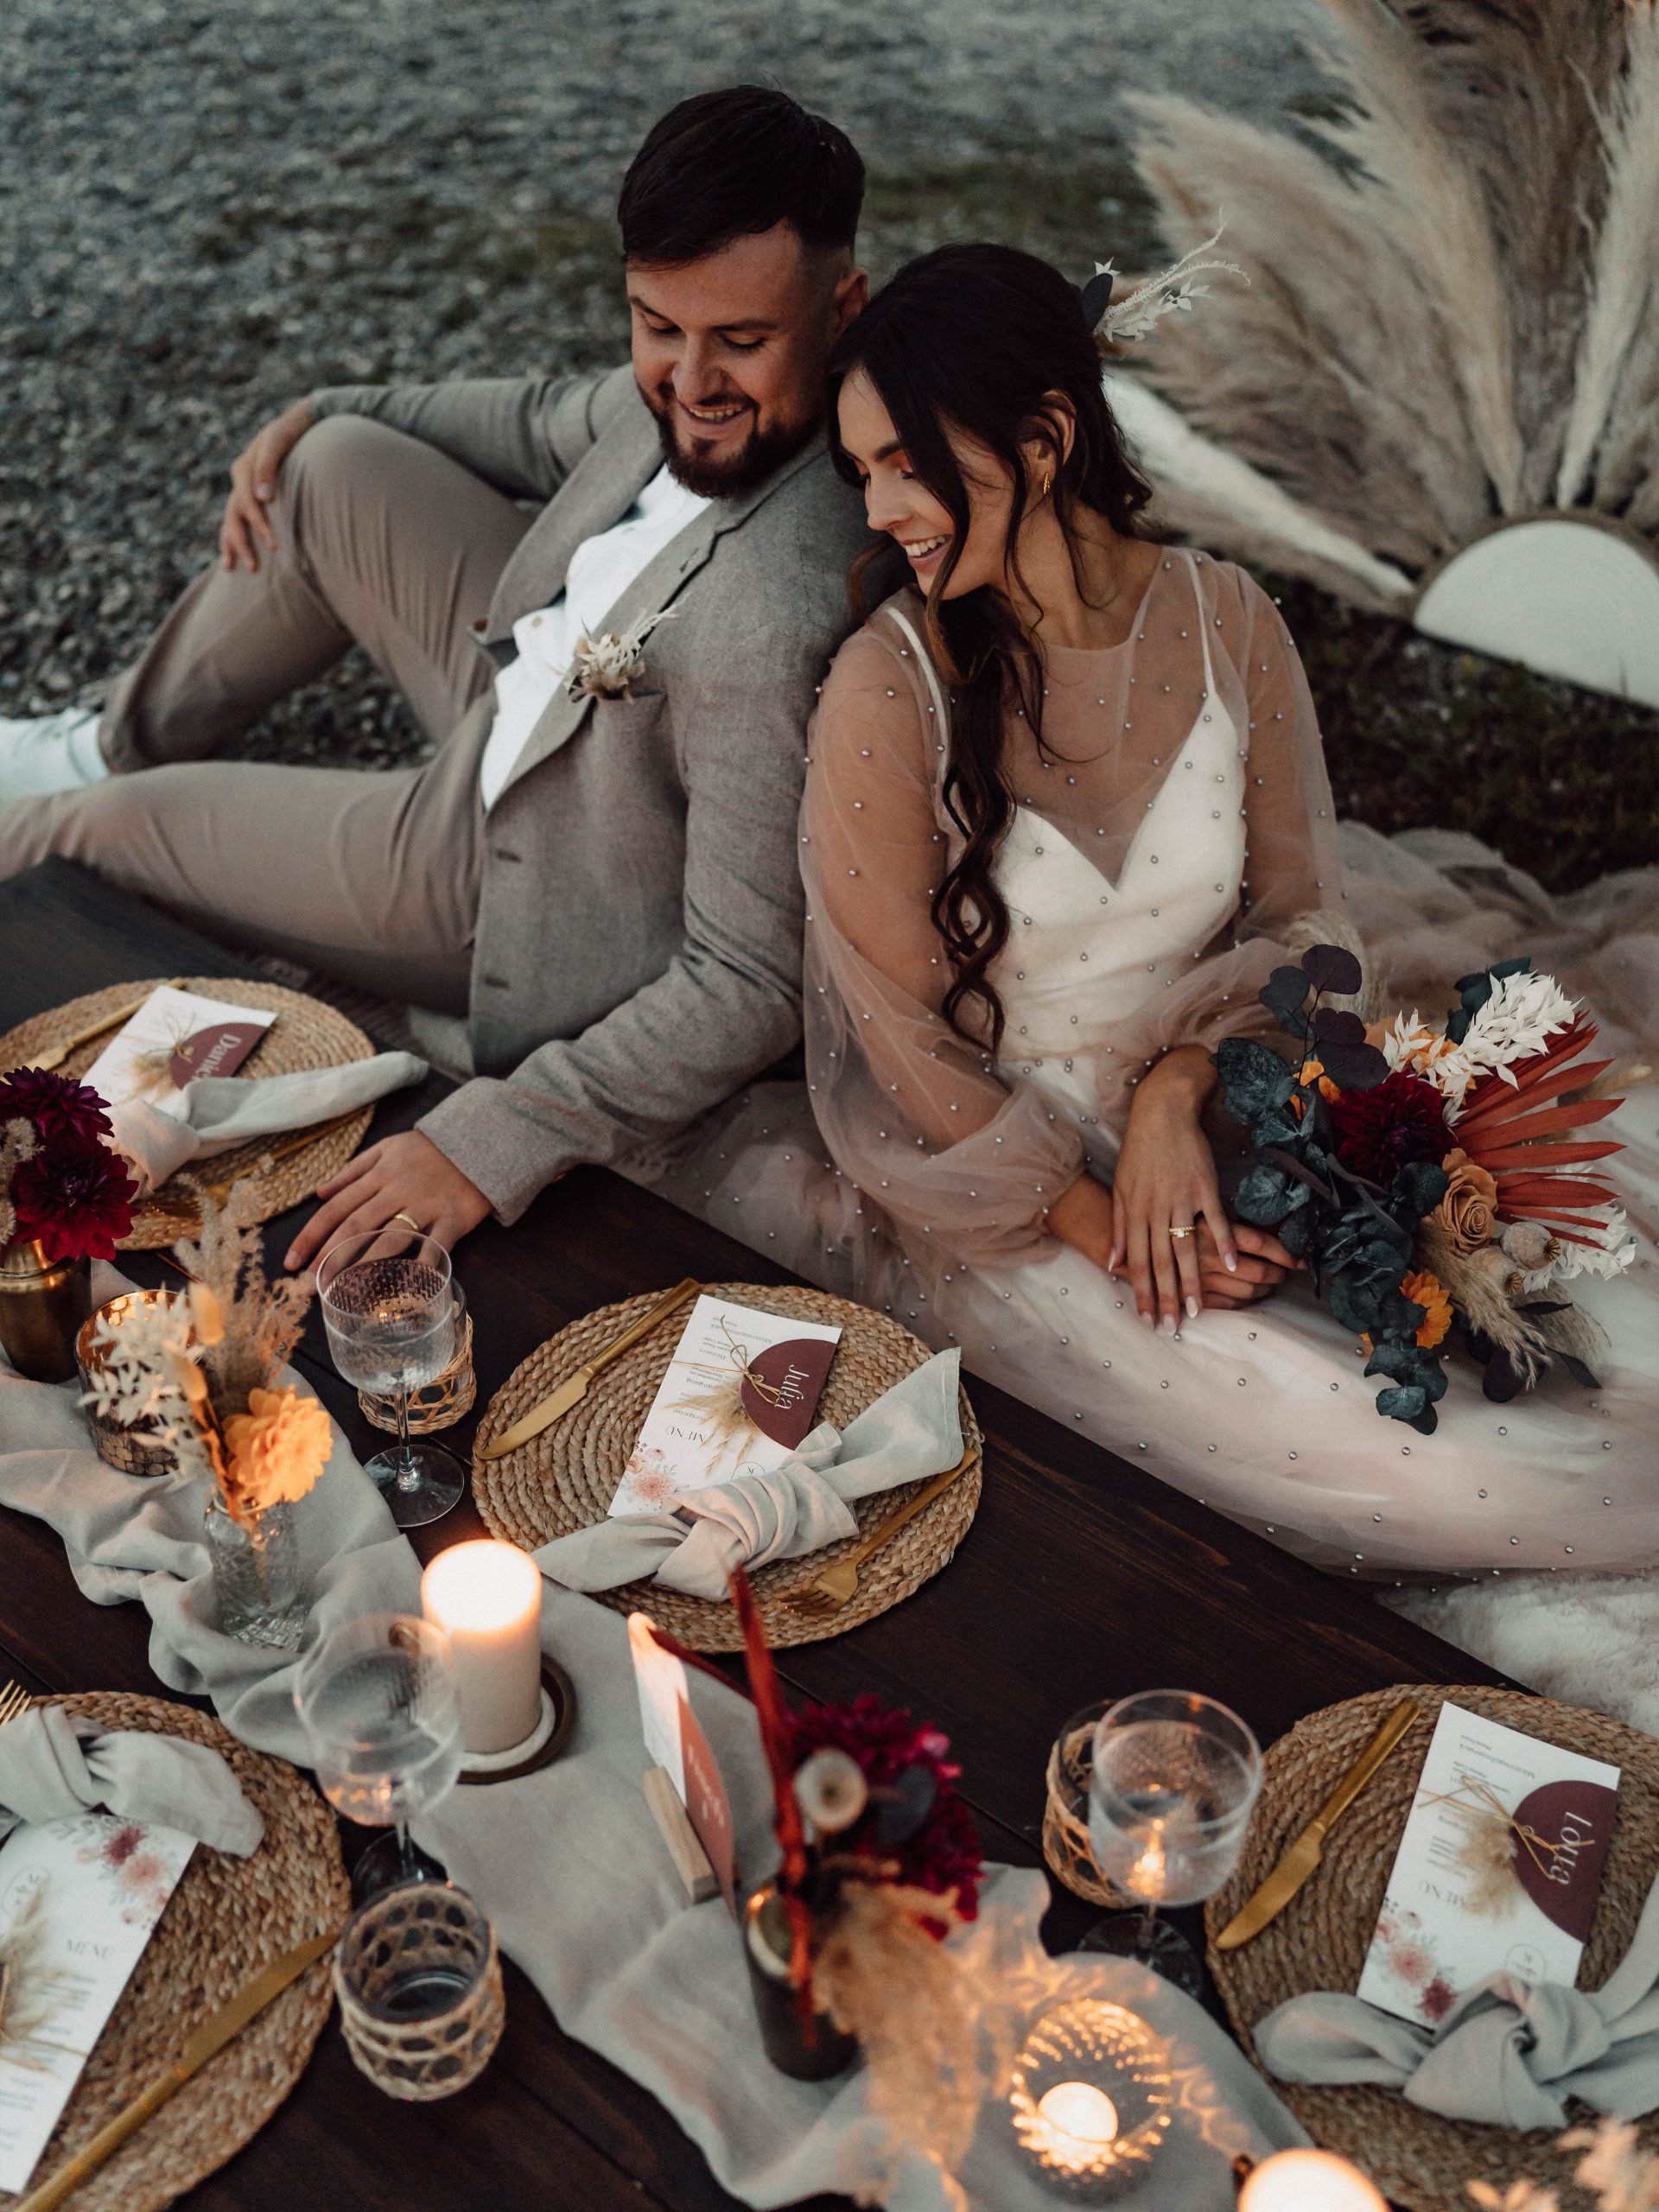 Ein Brautpaar sitzt am dekorierten Hochzeitstisch. Die Braut hält den Brautstrauß in der Hand.